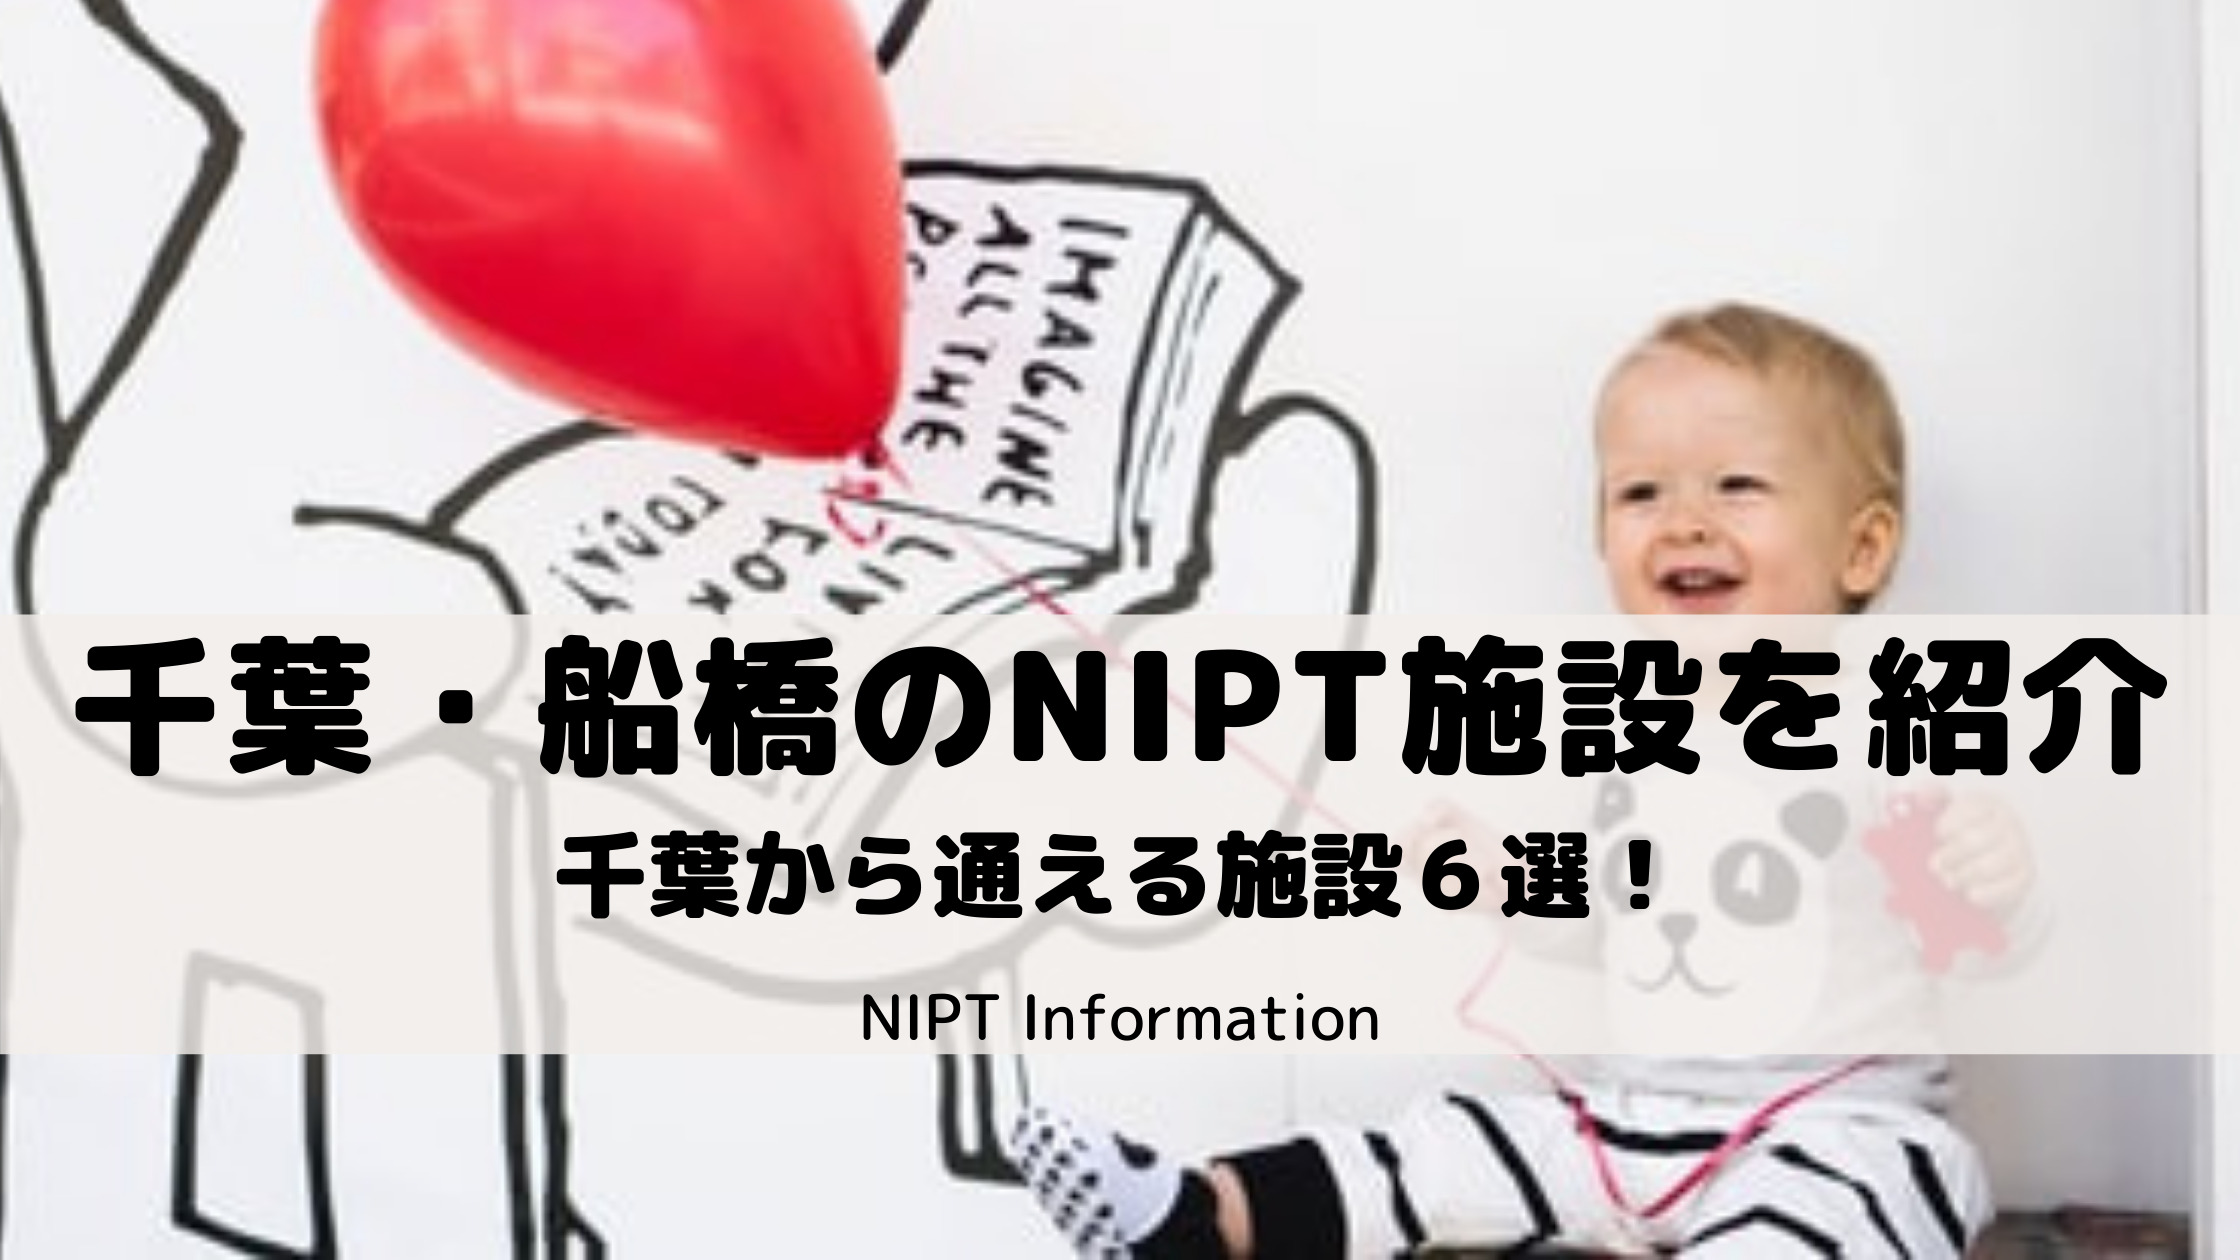 千葉・船橋でNIPT施設を探している方におすすめのクリニック紹介